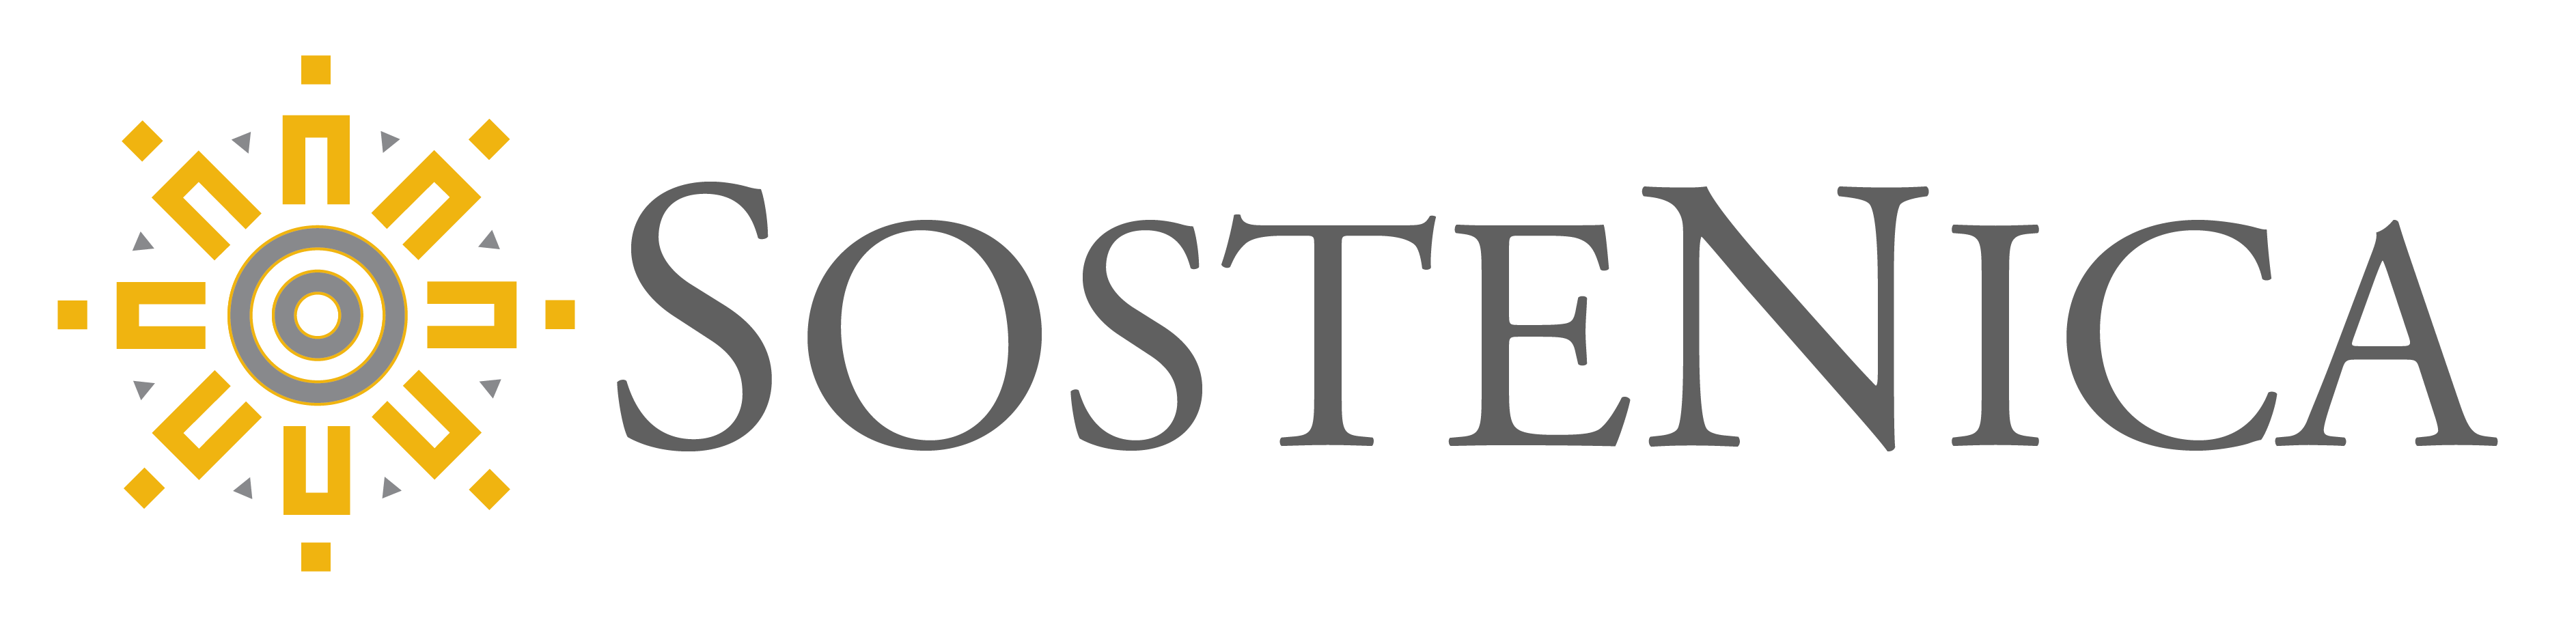 Sostenica Logo